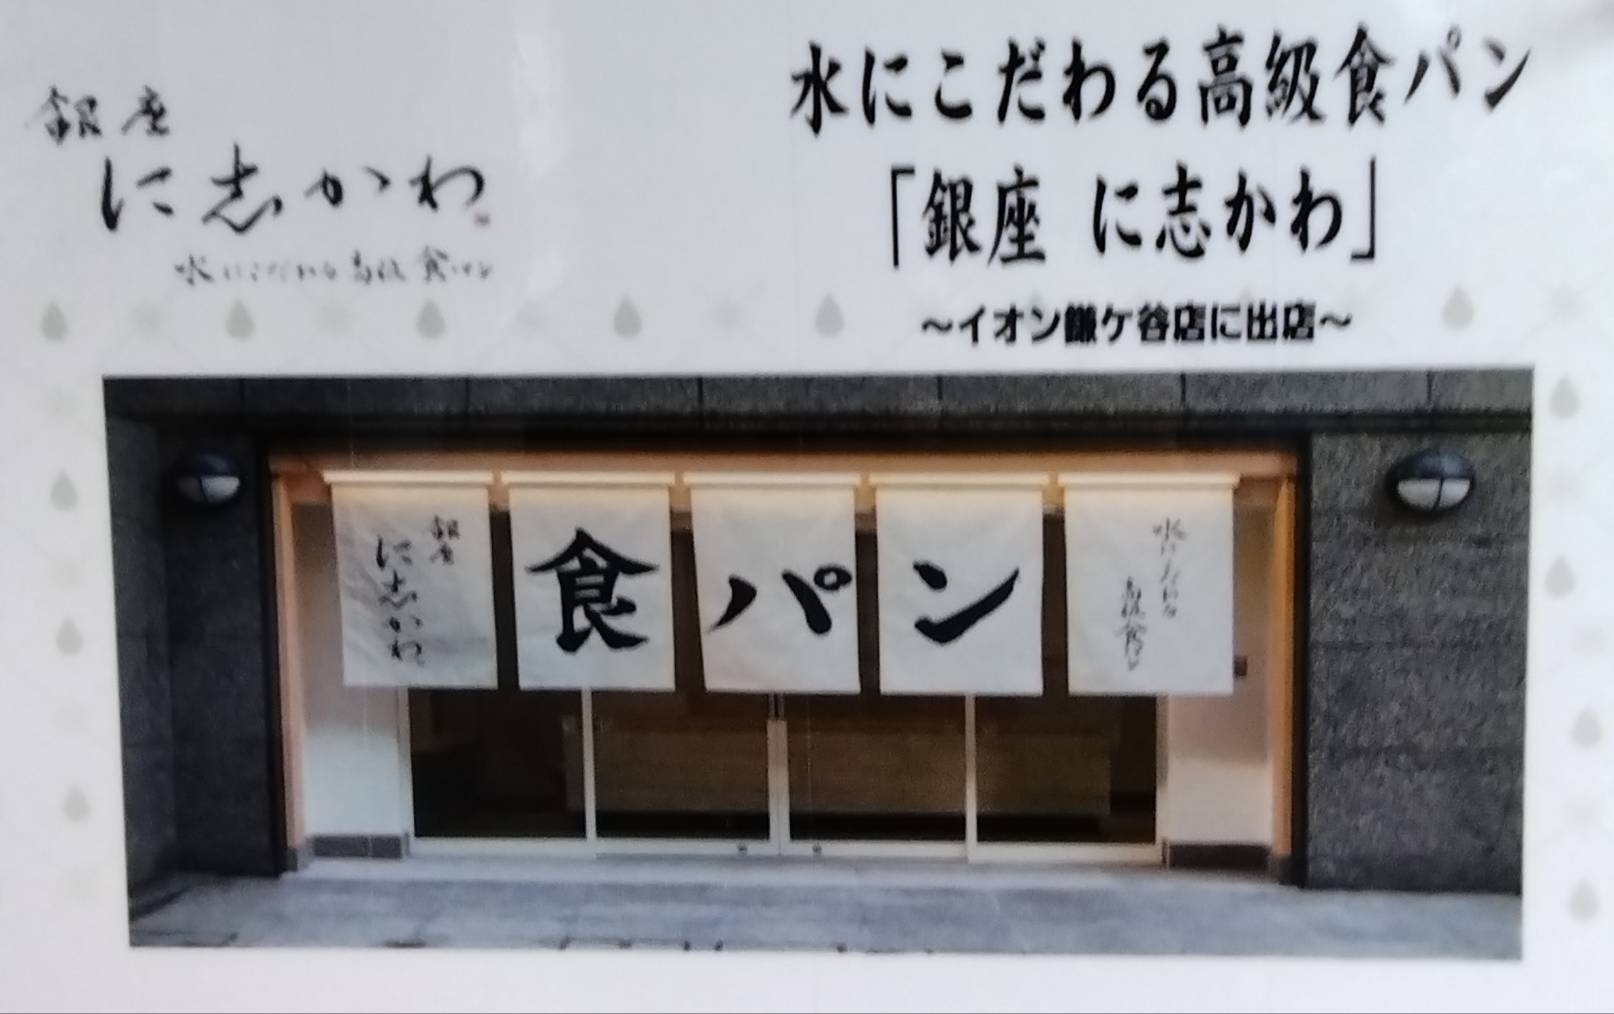 銀座に志かわ食パン値段イオン鎌ヶ谷店催事